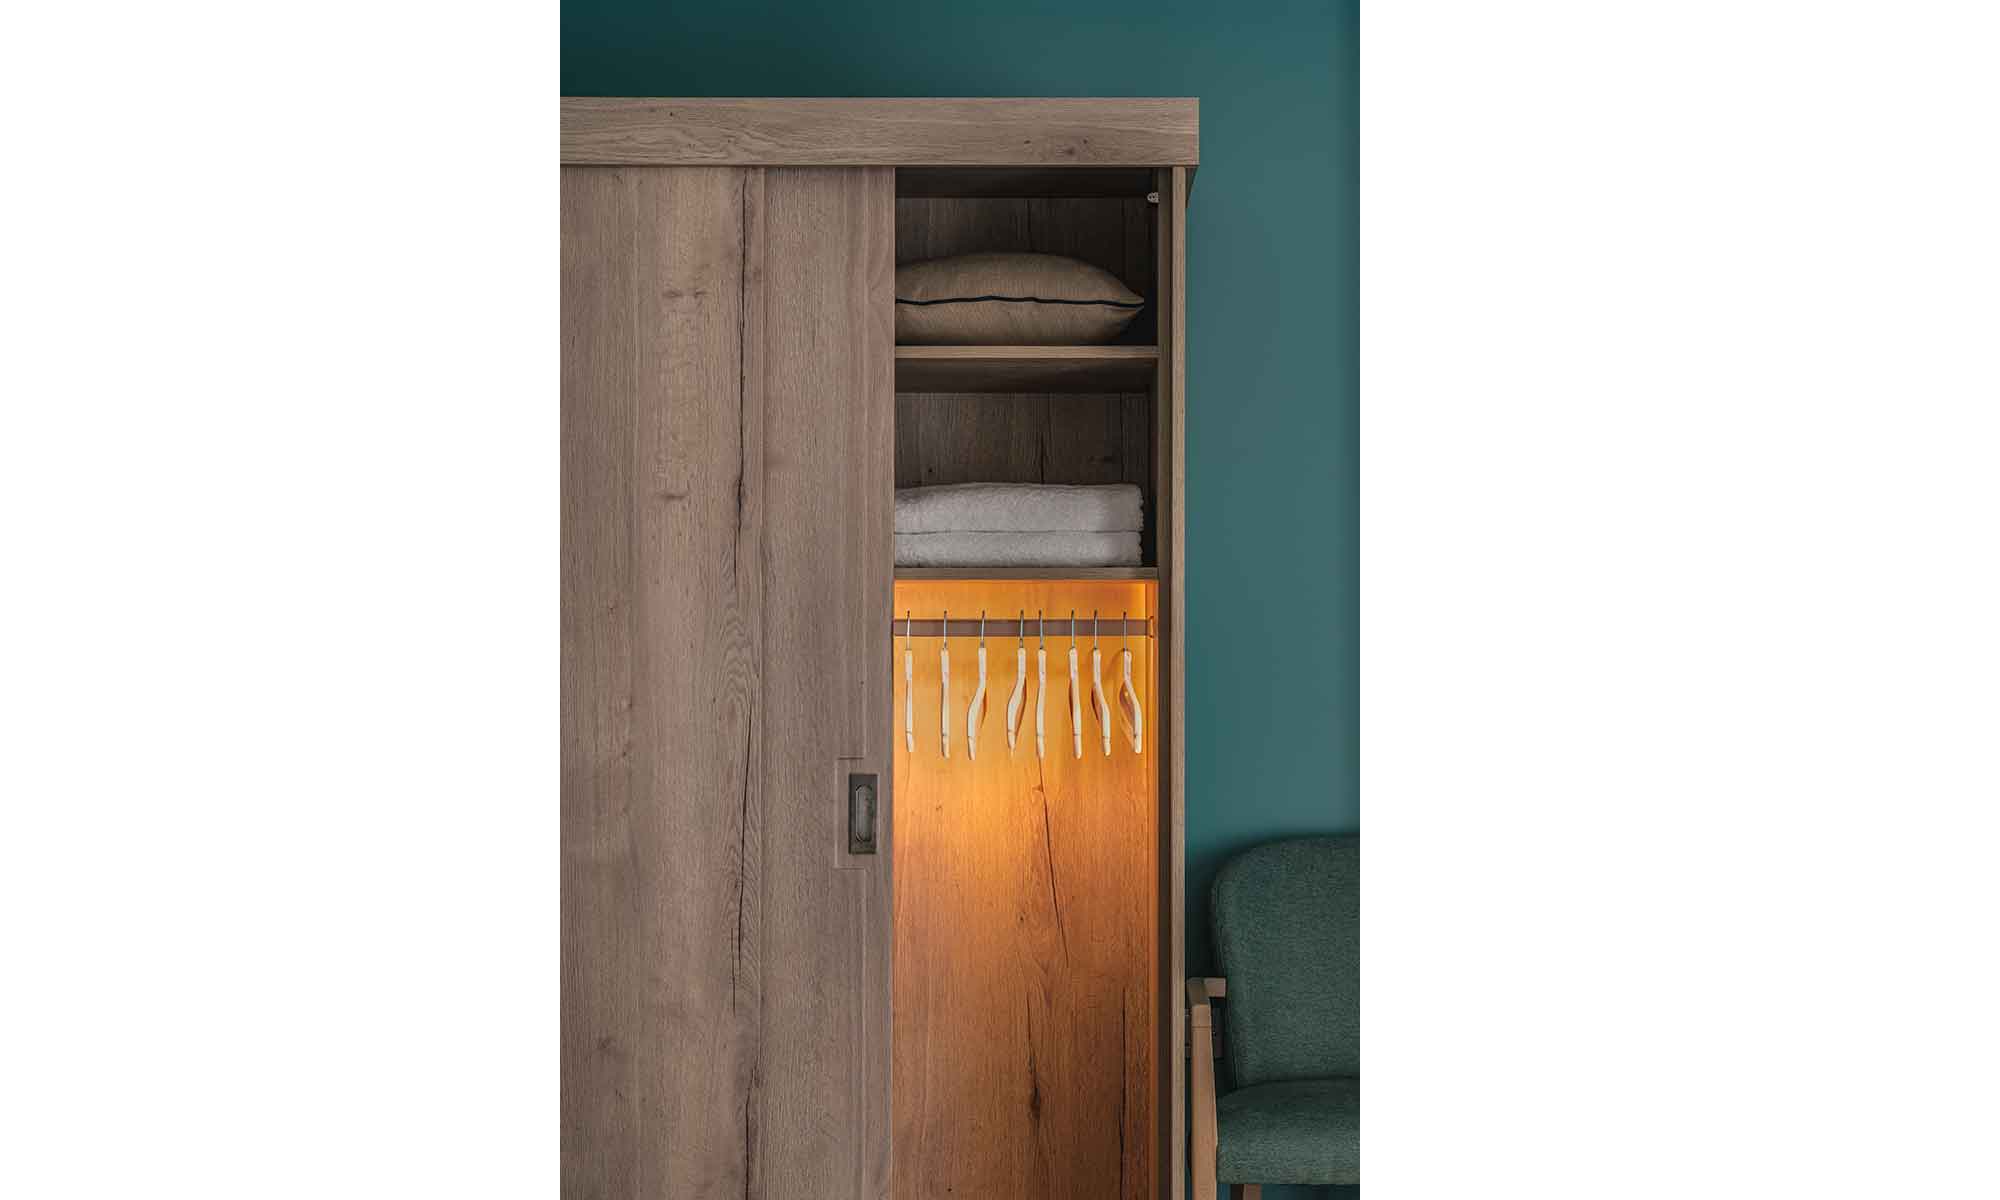 Bespoke sliding wardrobe with sliding door and illuminated hanging